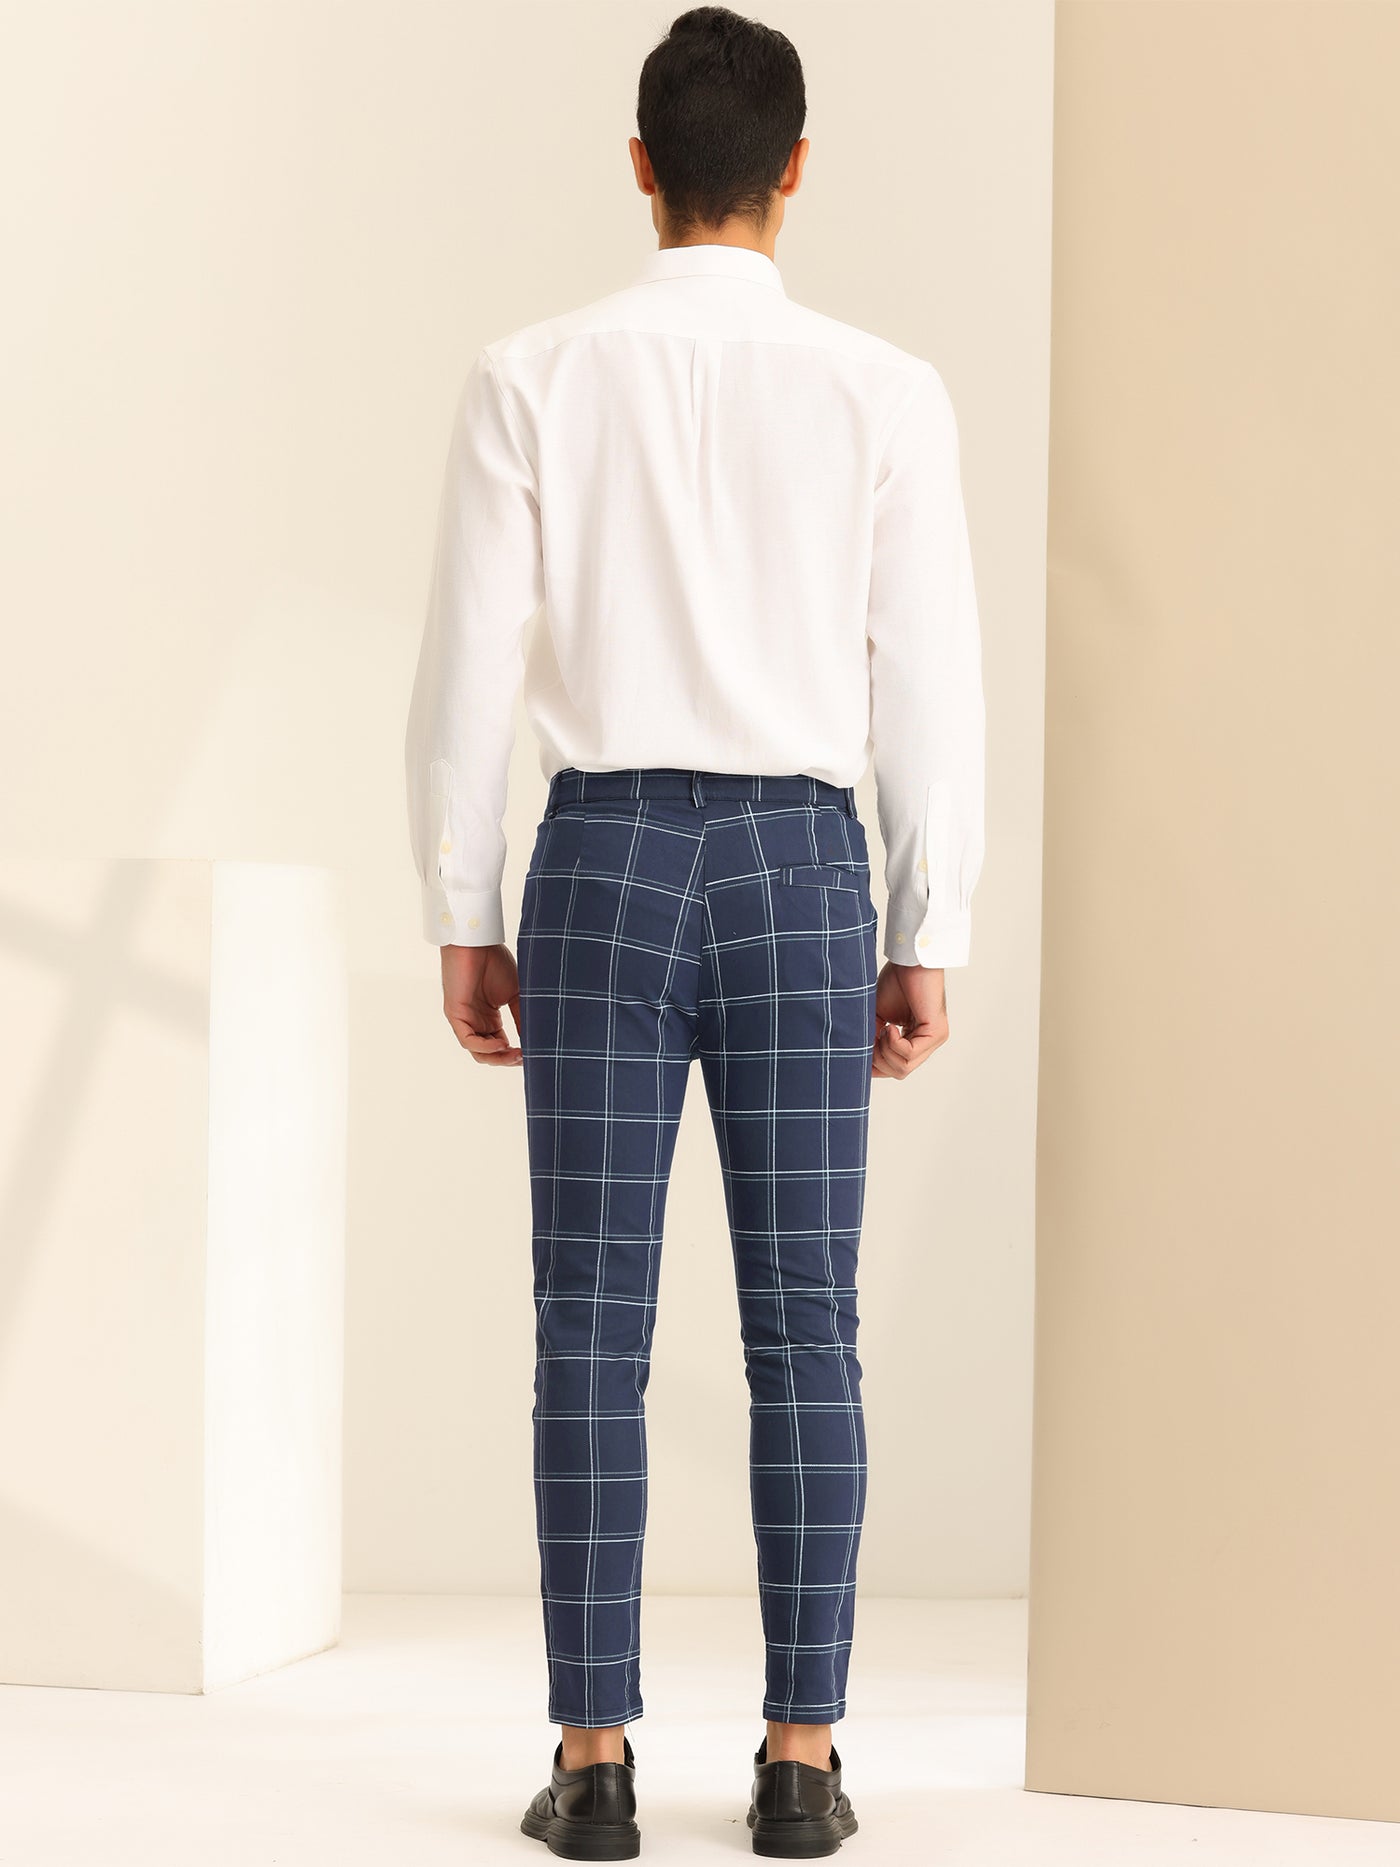 Bublédon Men's Plaid Dress Pants Slim Fit Business Classic Checked Trousers